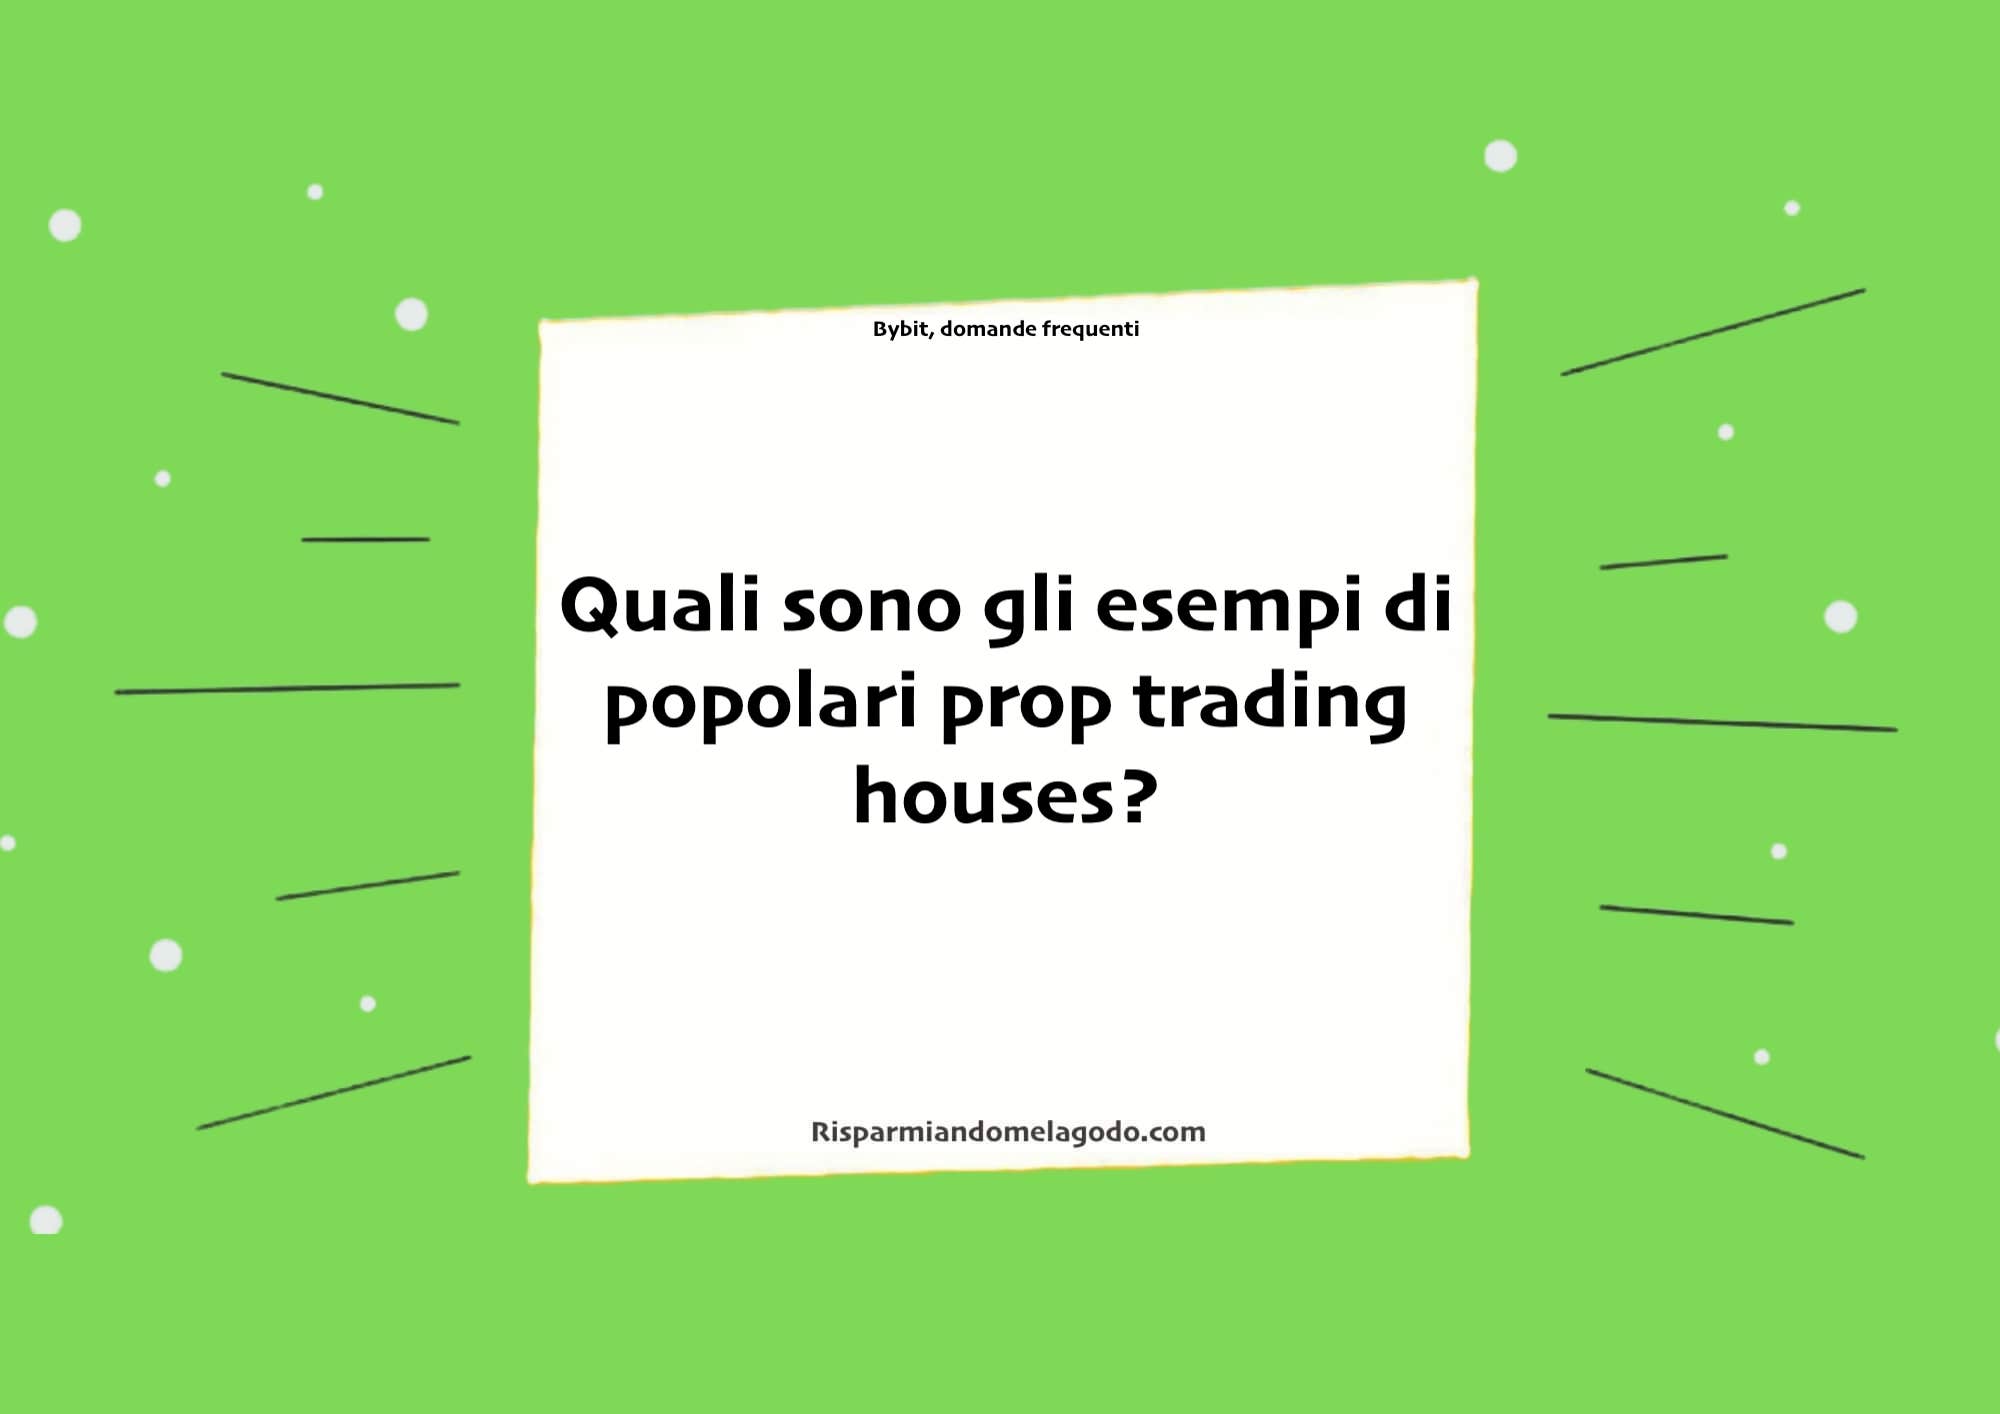 Quali sono gli esempi di popolari prop trading houses?